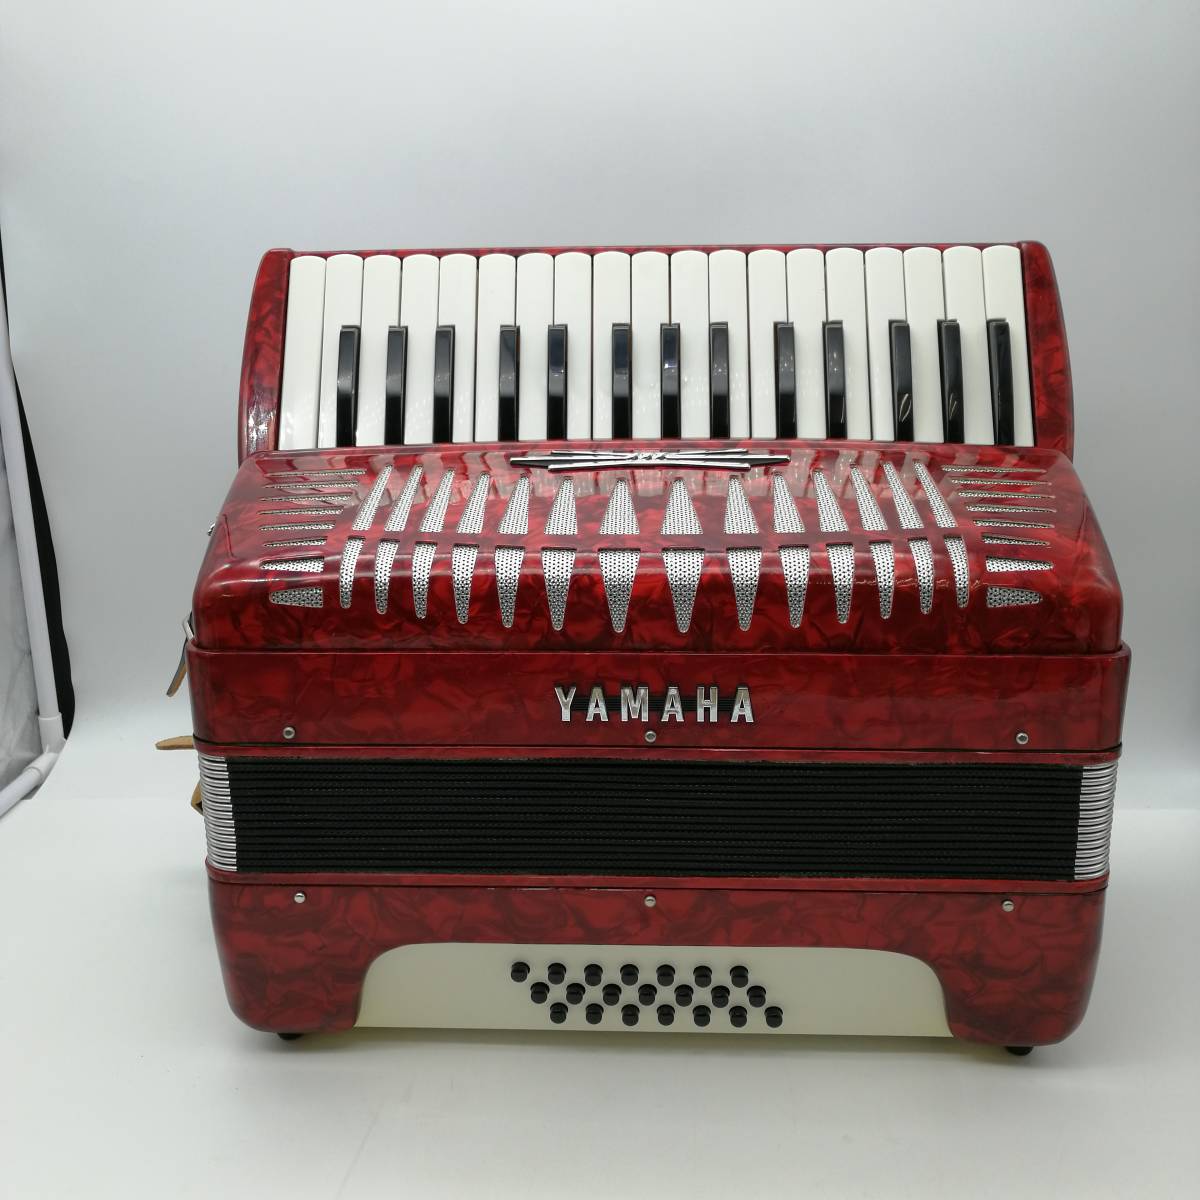 h3752 YAMAHA ヤマハ アコーディオン レザーケース付 RED レッド 赤 音楽 ミュージック 演奏 鍵盤楽器 現状品 説明書付きの画像6